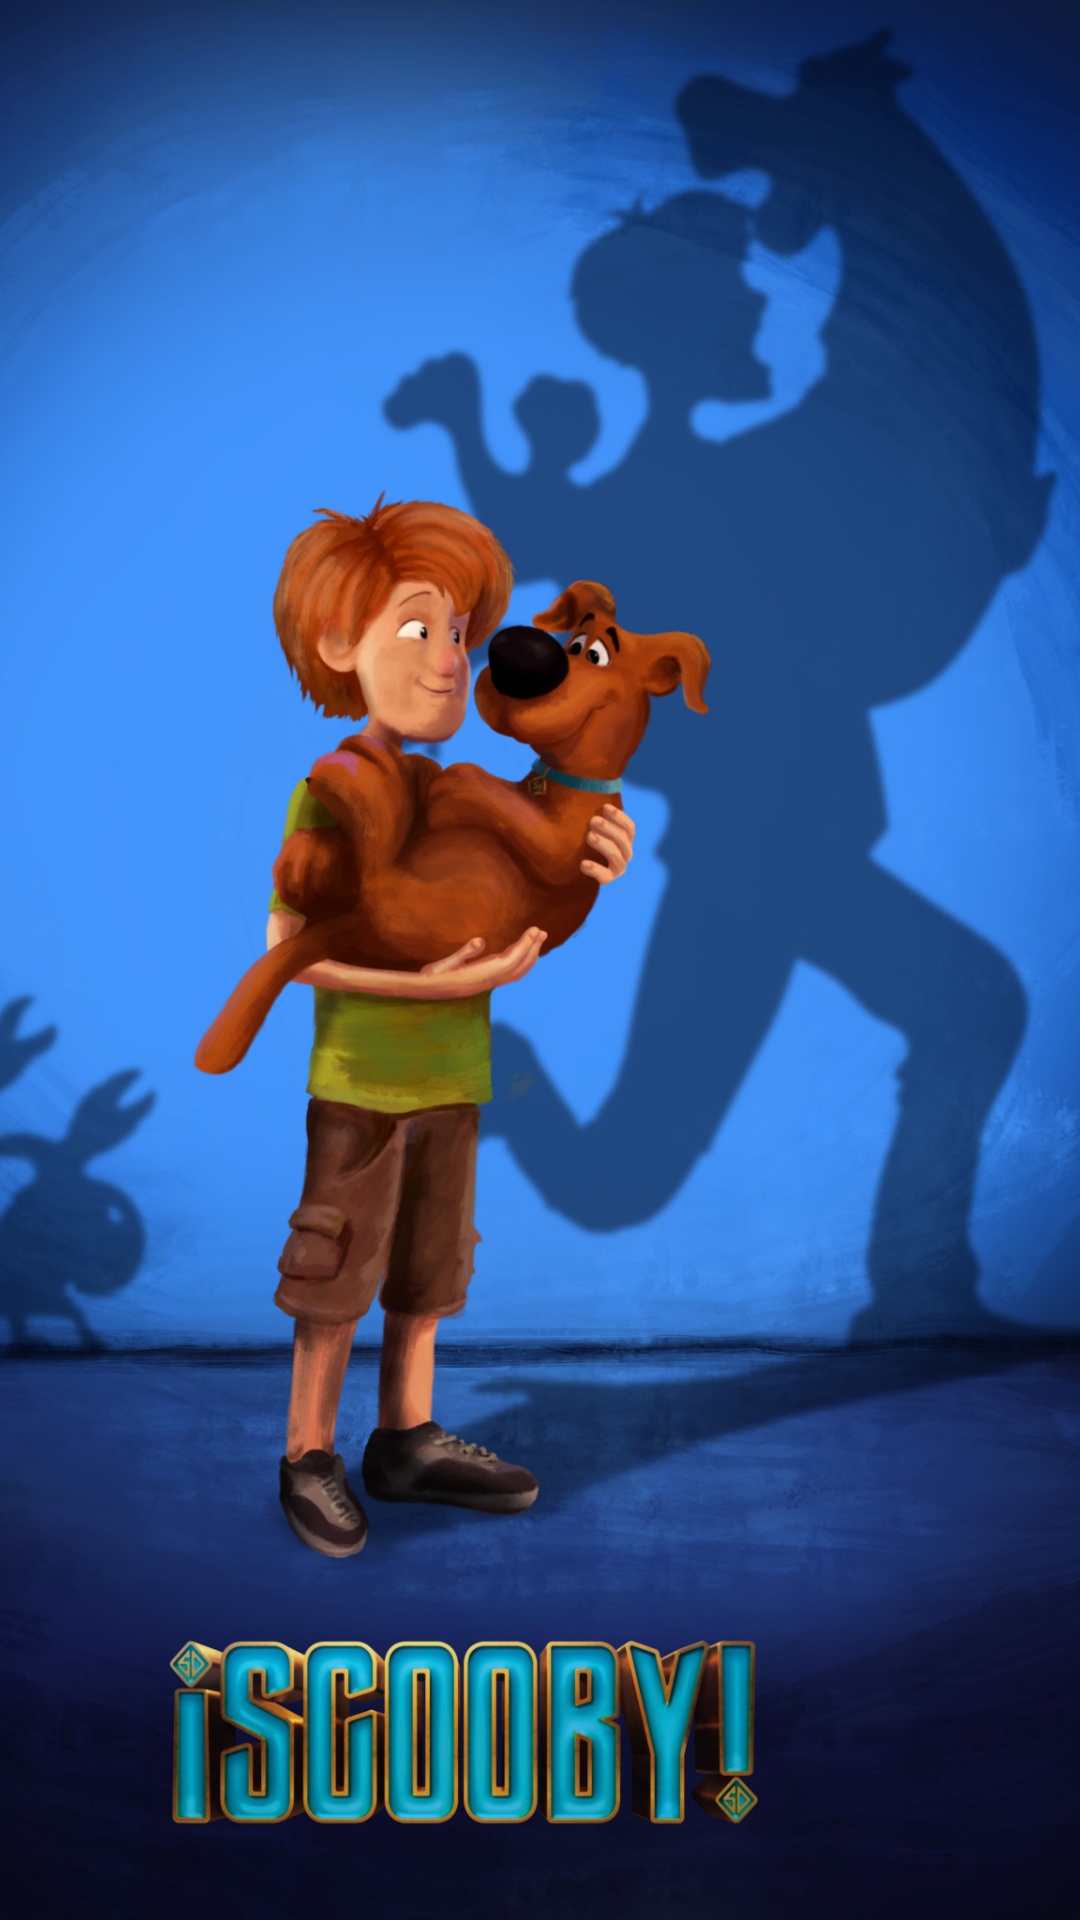 Scooby Doo Wallpaper Images